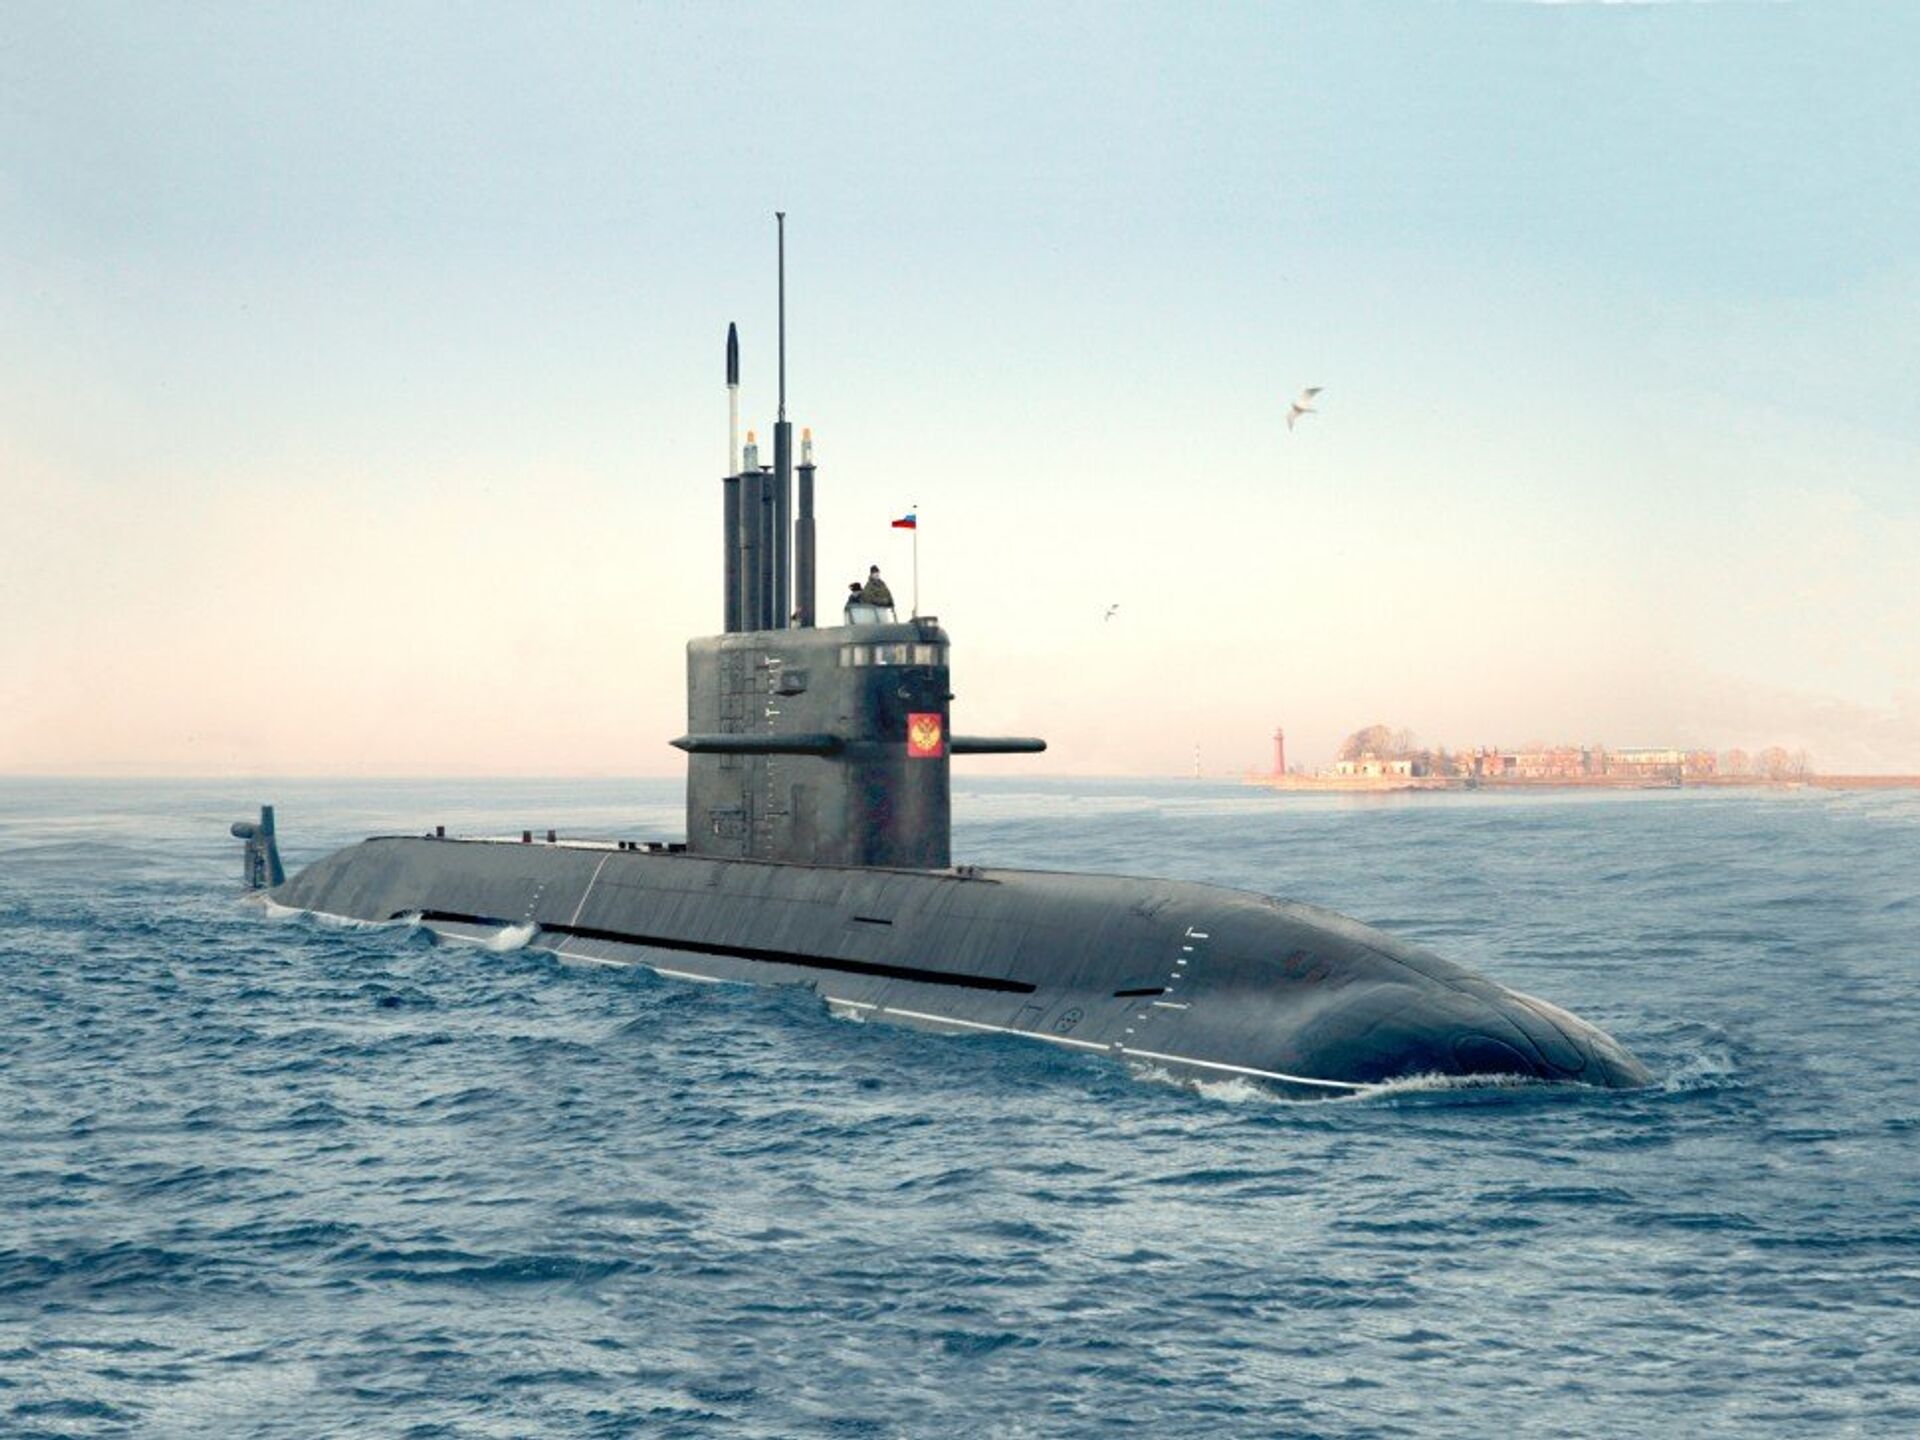 П л к 33. Амур 1650 подводная лодка. ДЭПЛ проекта "Амур-1650".. Российская подлодка всплыла возле статуи свободы в США. Российская подводная лодка у статуи свободы.